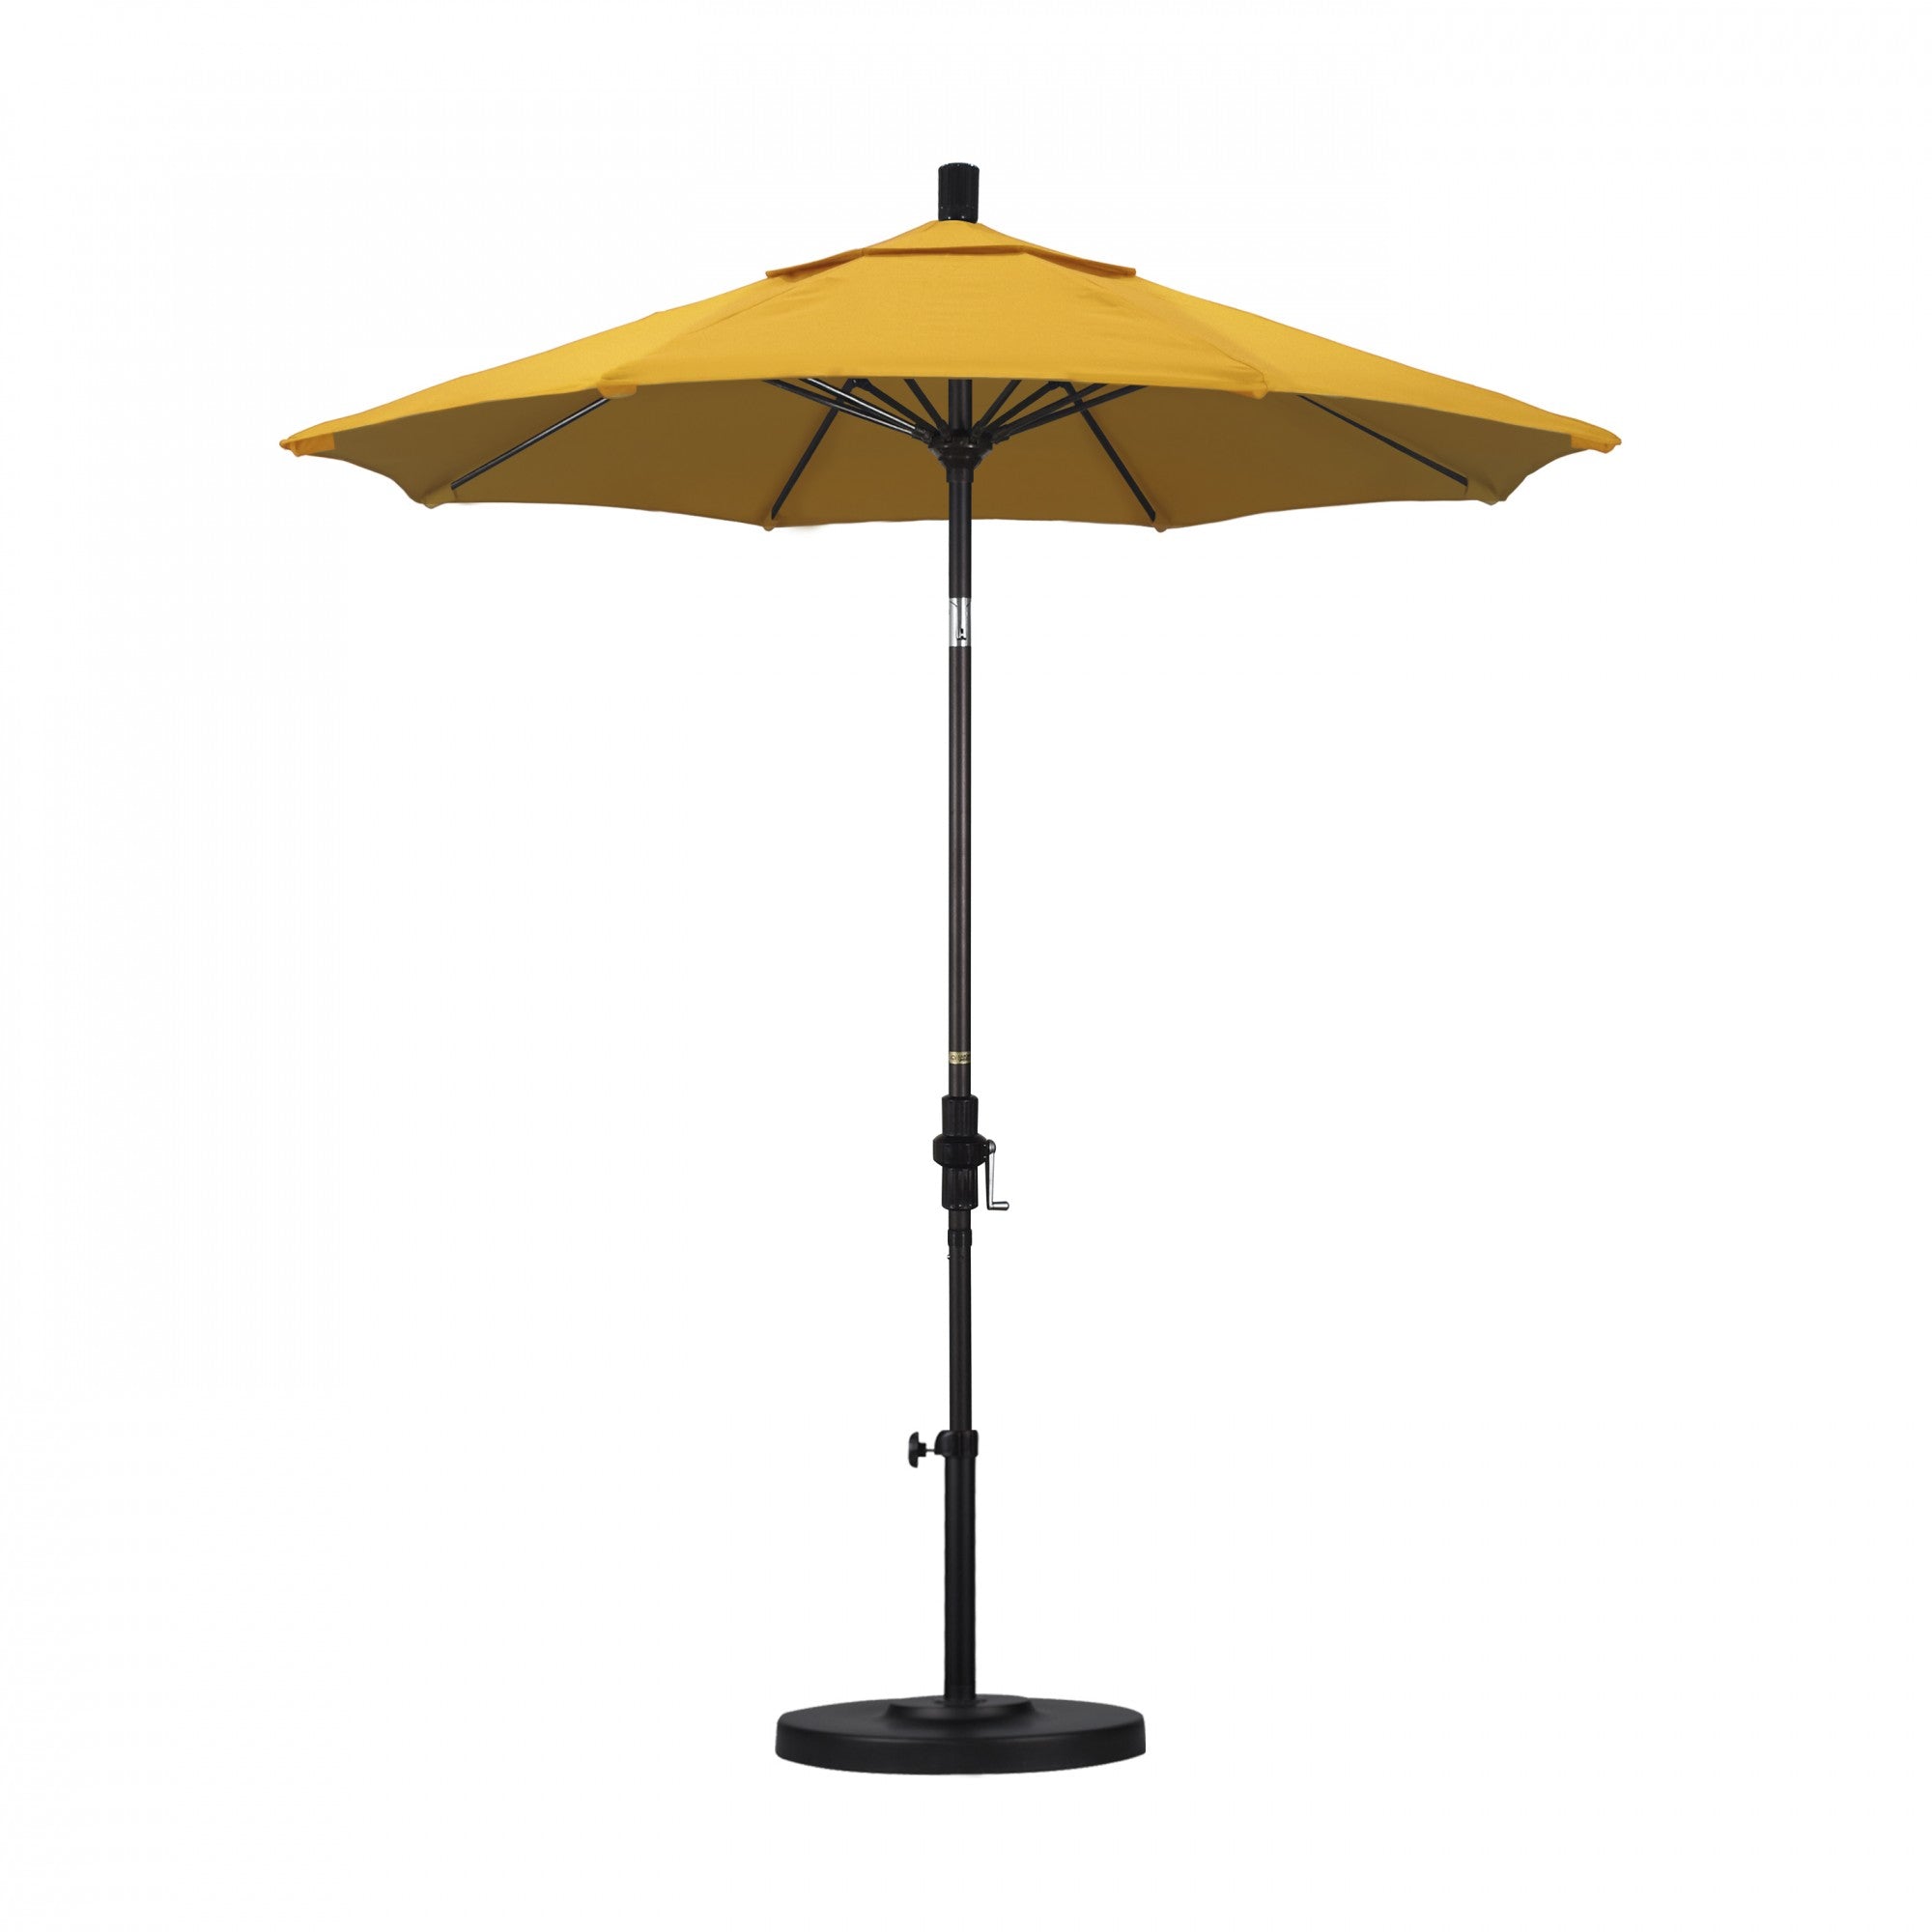 California Umbrella - 7.5' - Patio Umbrella Umbrella - Aluminum Pole - Lemon - Olefin - GSCUF758117-F25